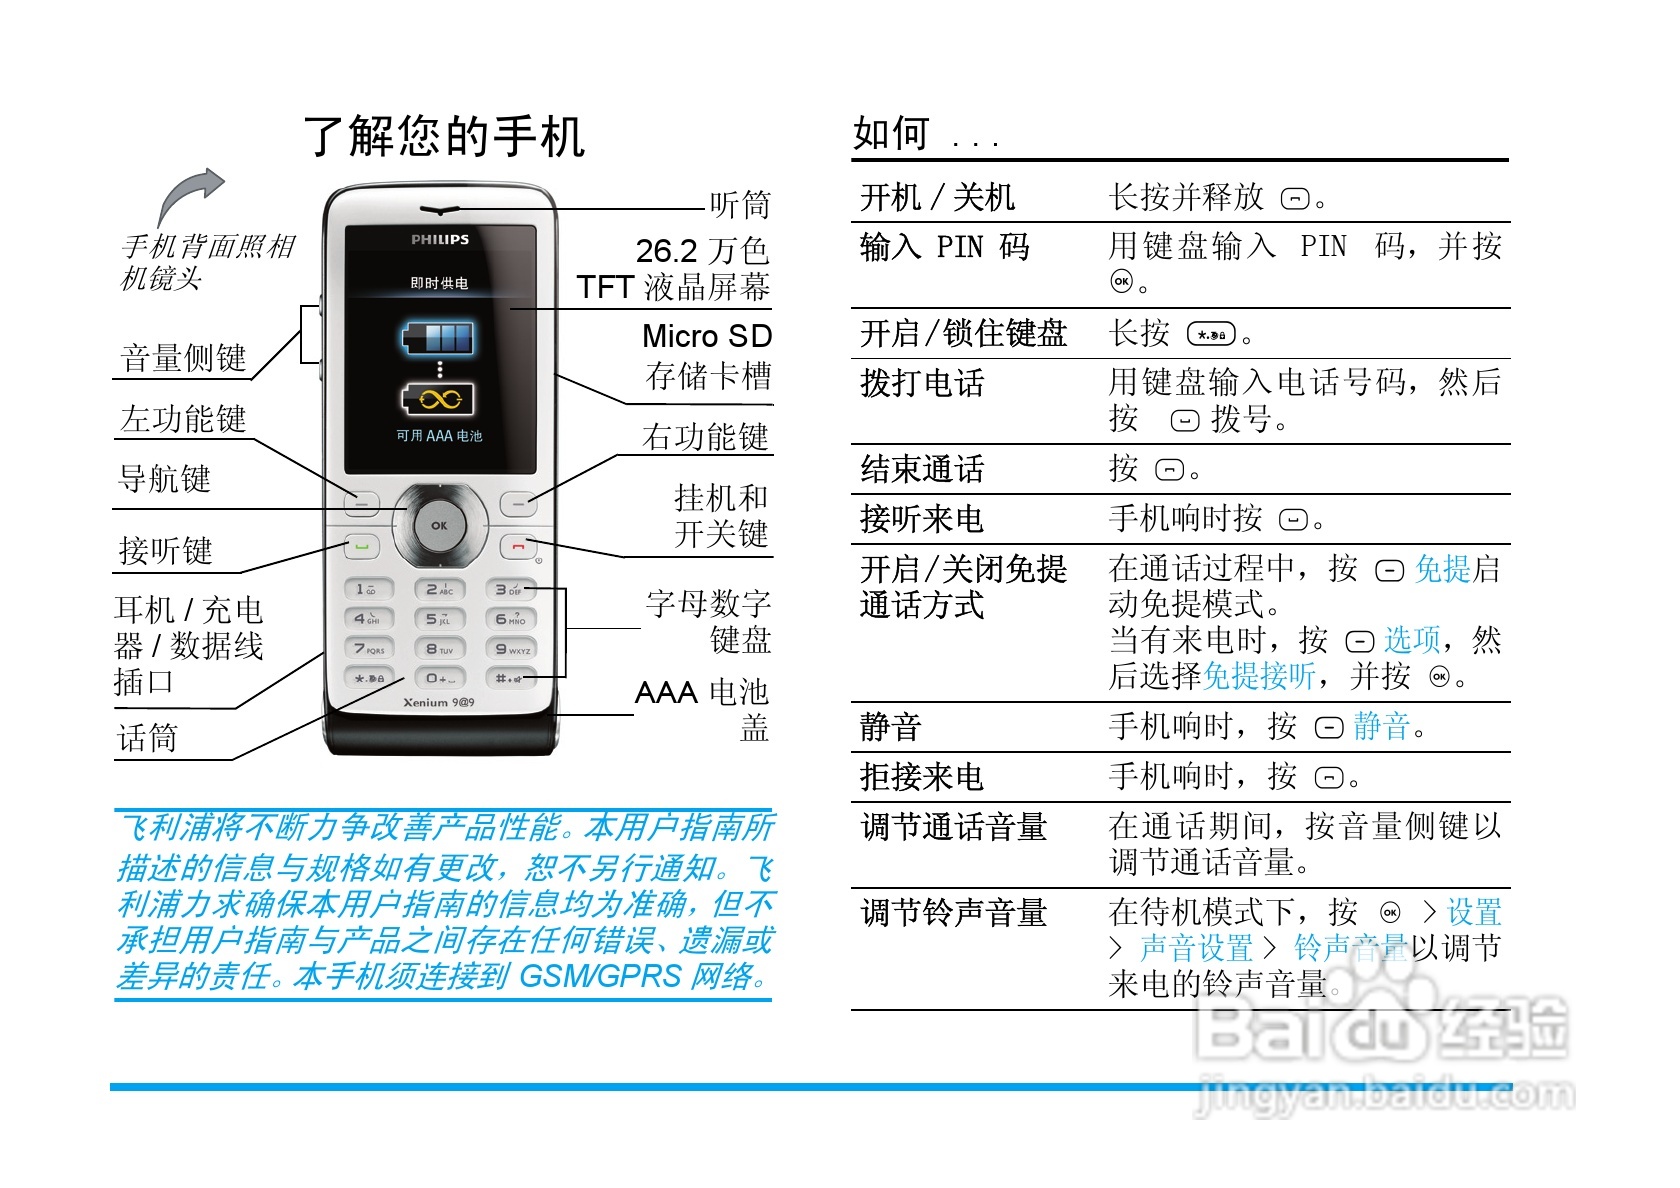 飞利浦x520手机使用说明书:[1]